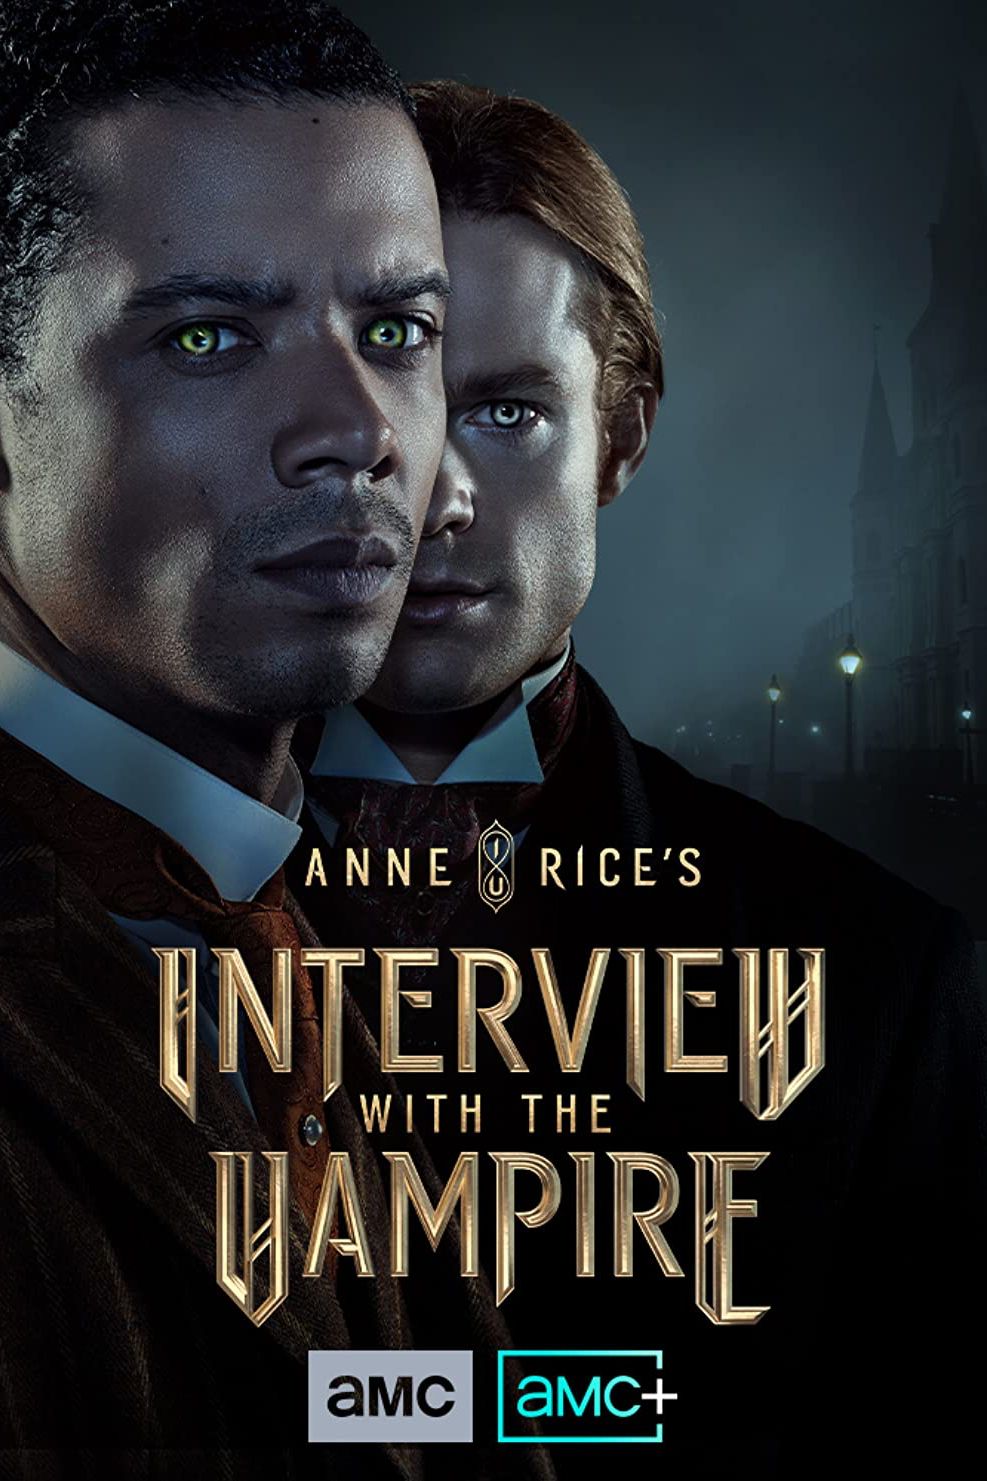 Wawancara dengan Poster TV Vampir